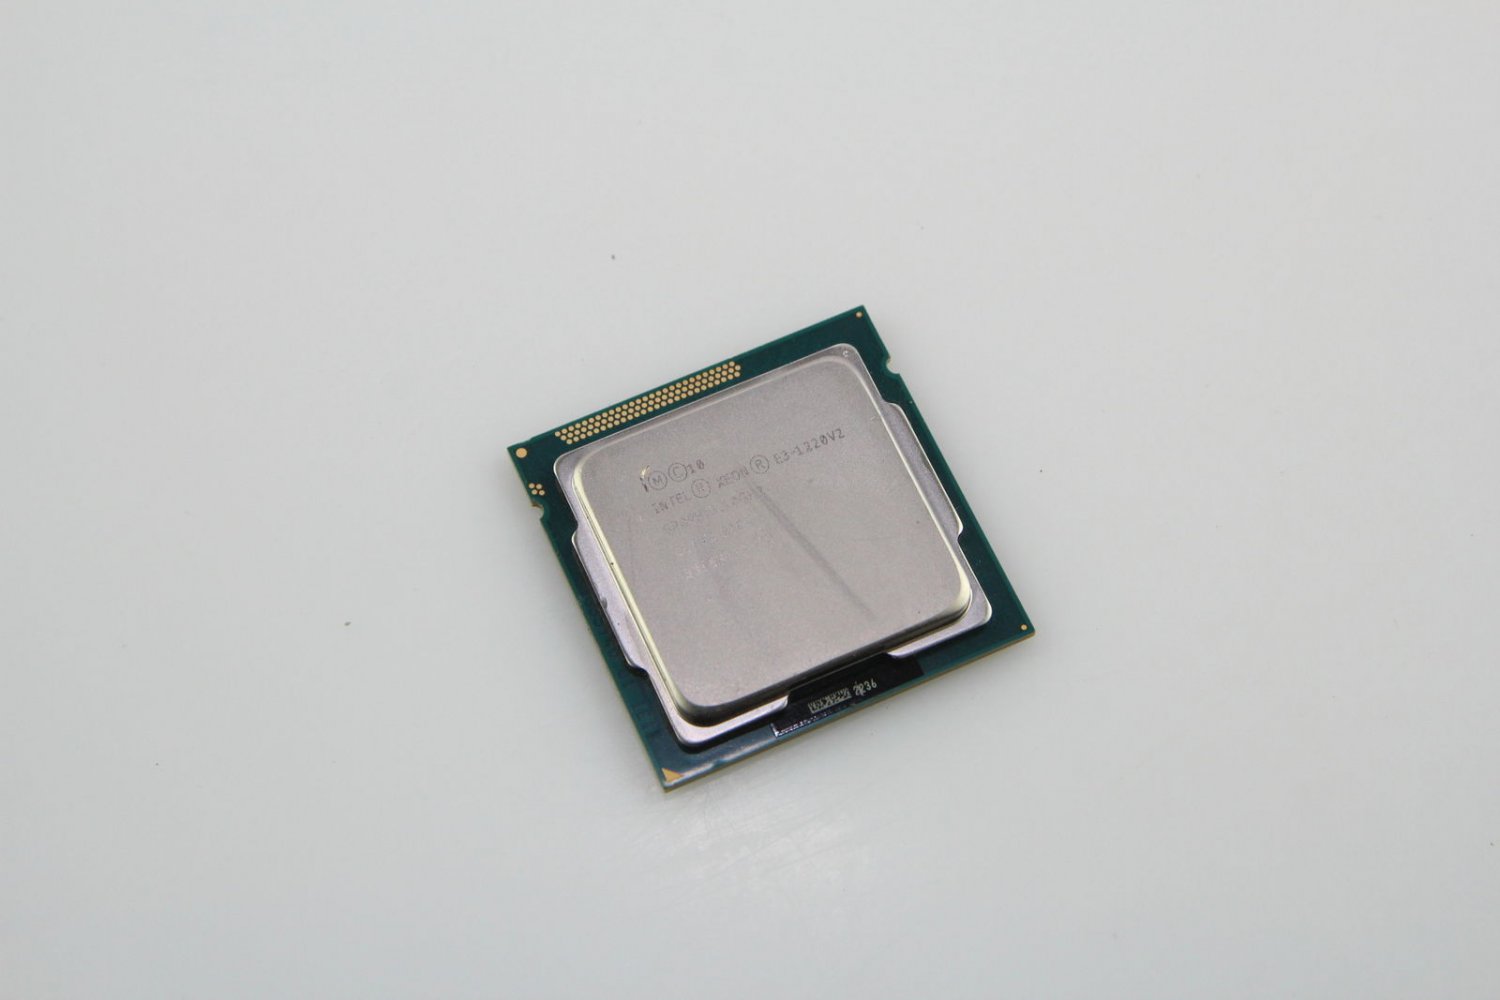 Genuine Intel Xeon Quad-Core E3-1220 v2 SR0PH 3.1GHz 8M Cache Processor